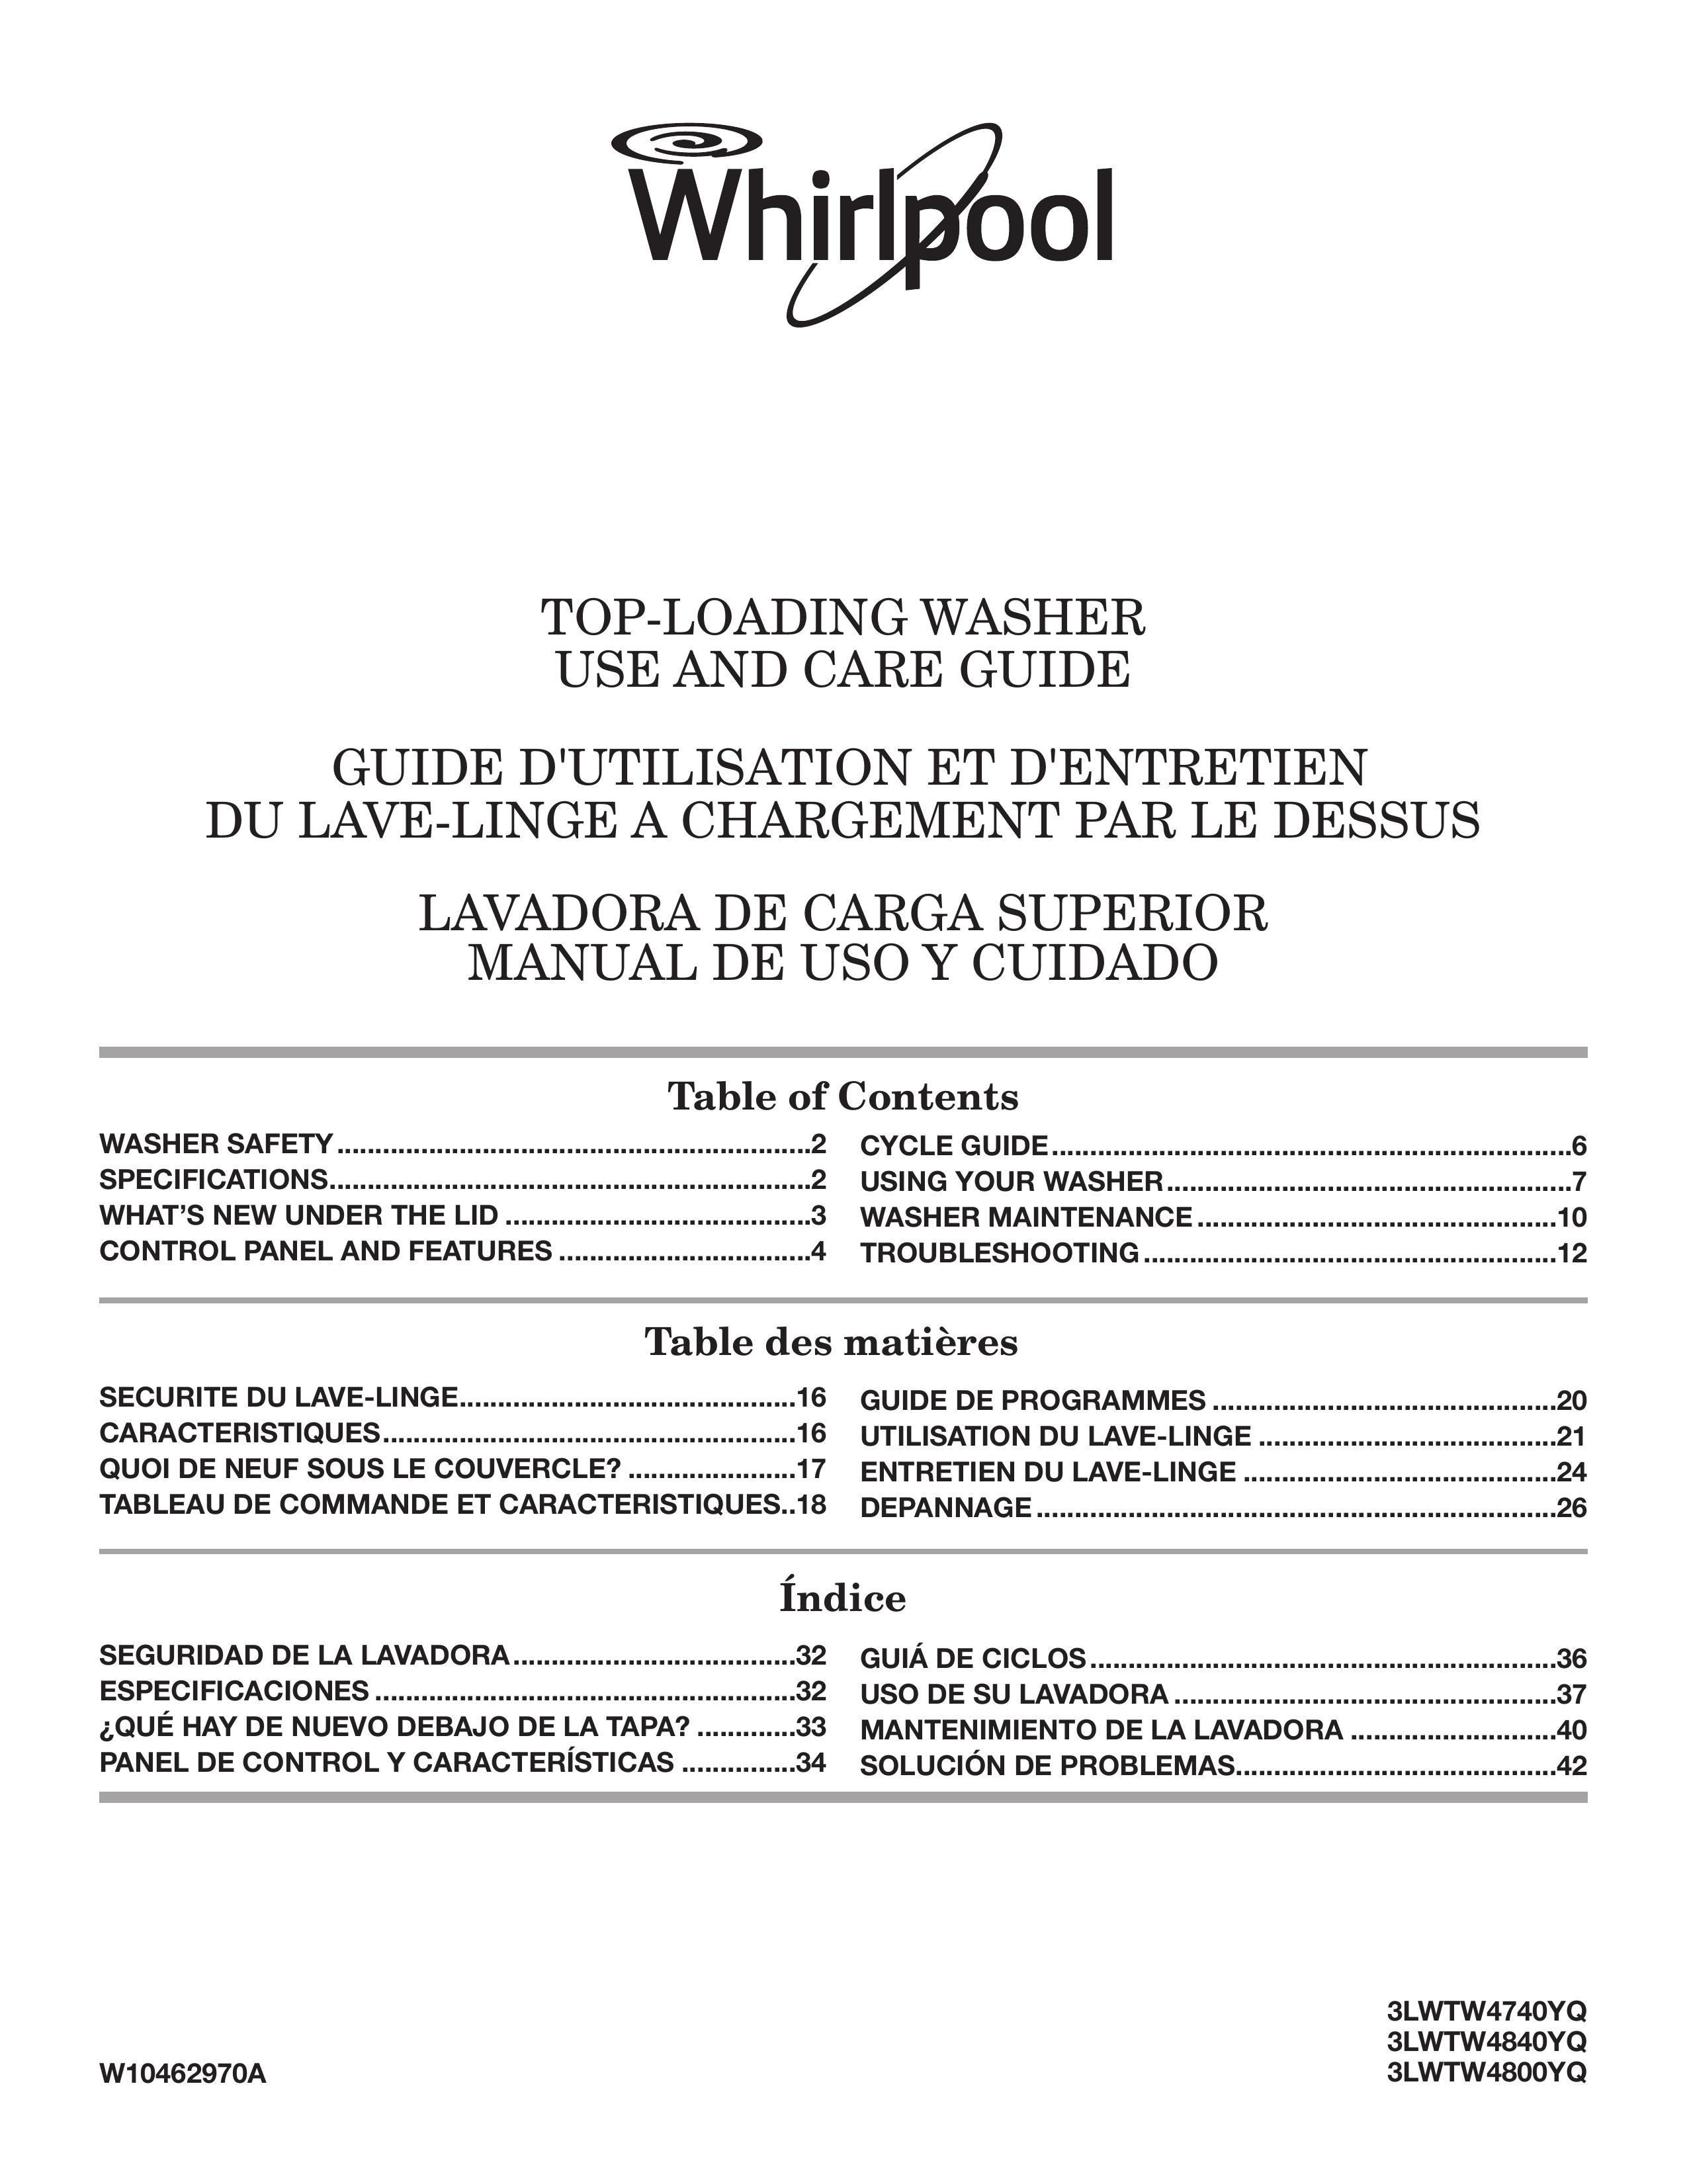 Maytag 3LWTW4800YQ Washer User Manual